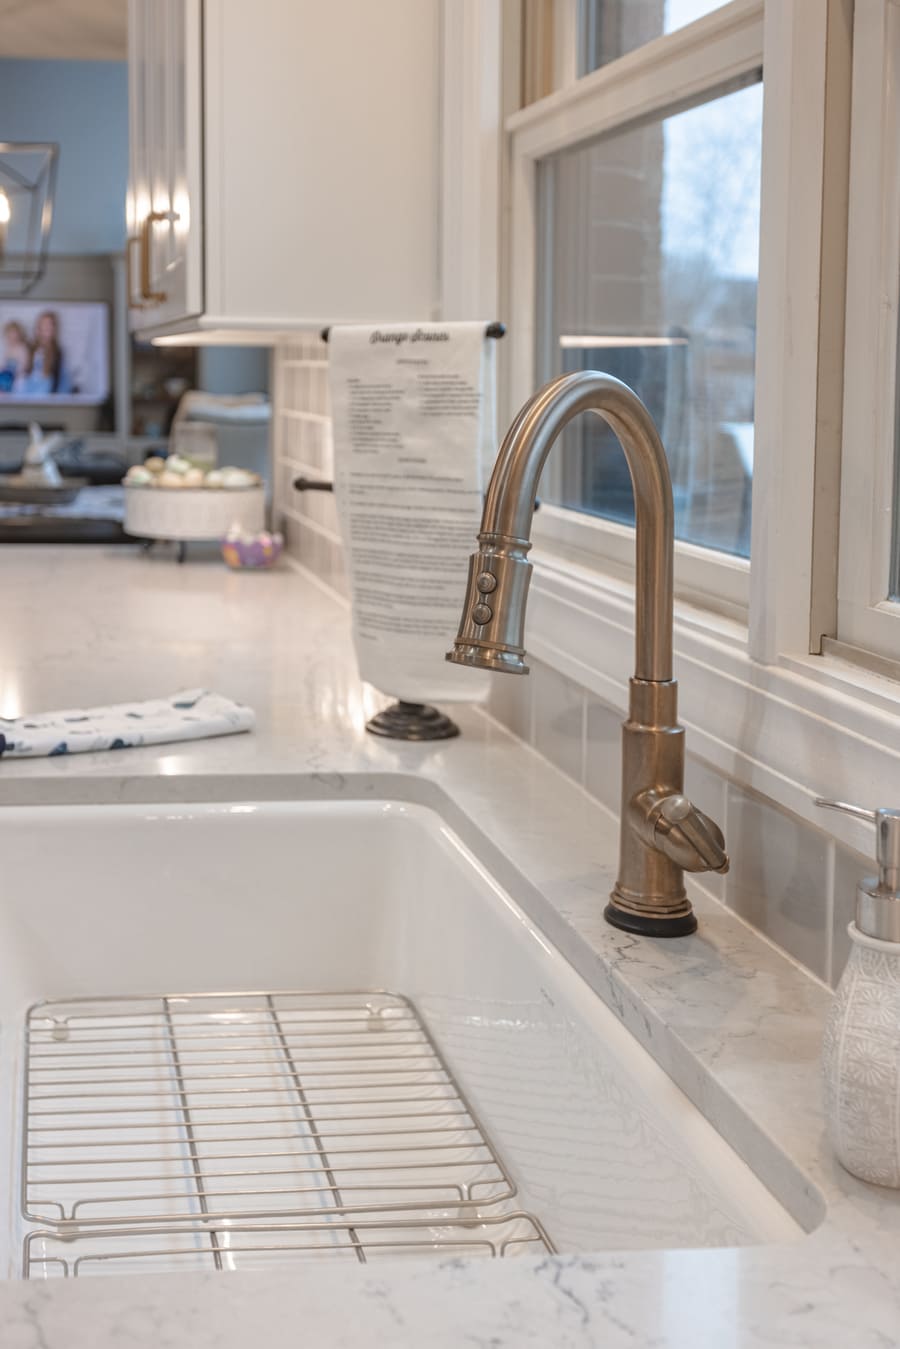 Stainless steel sink faucet in Cincinnati, Ohio kitchen remodel by Legacy Builders